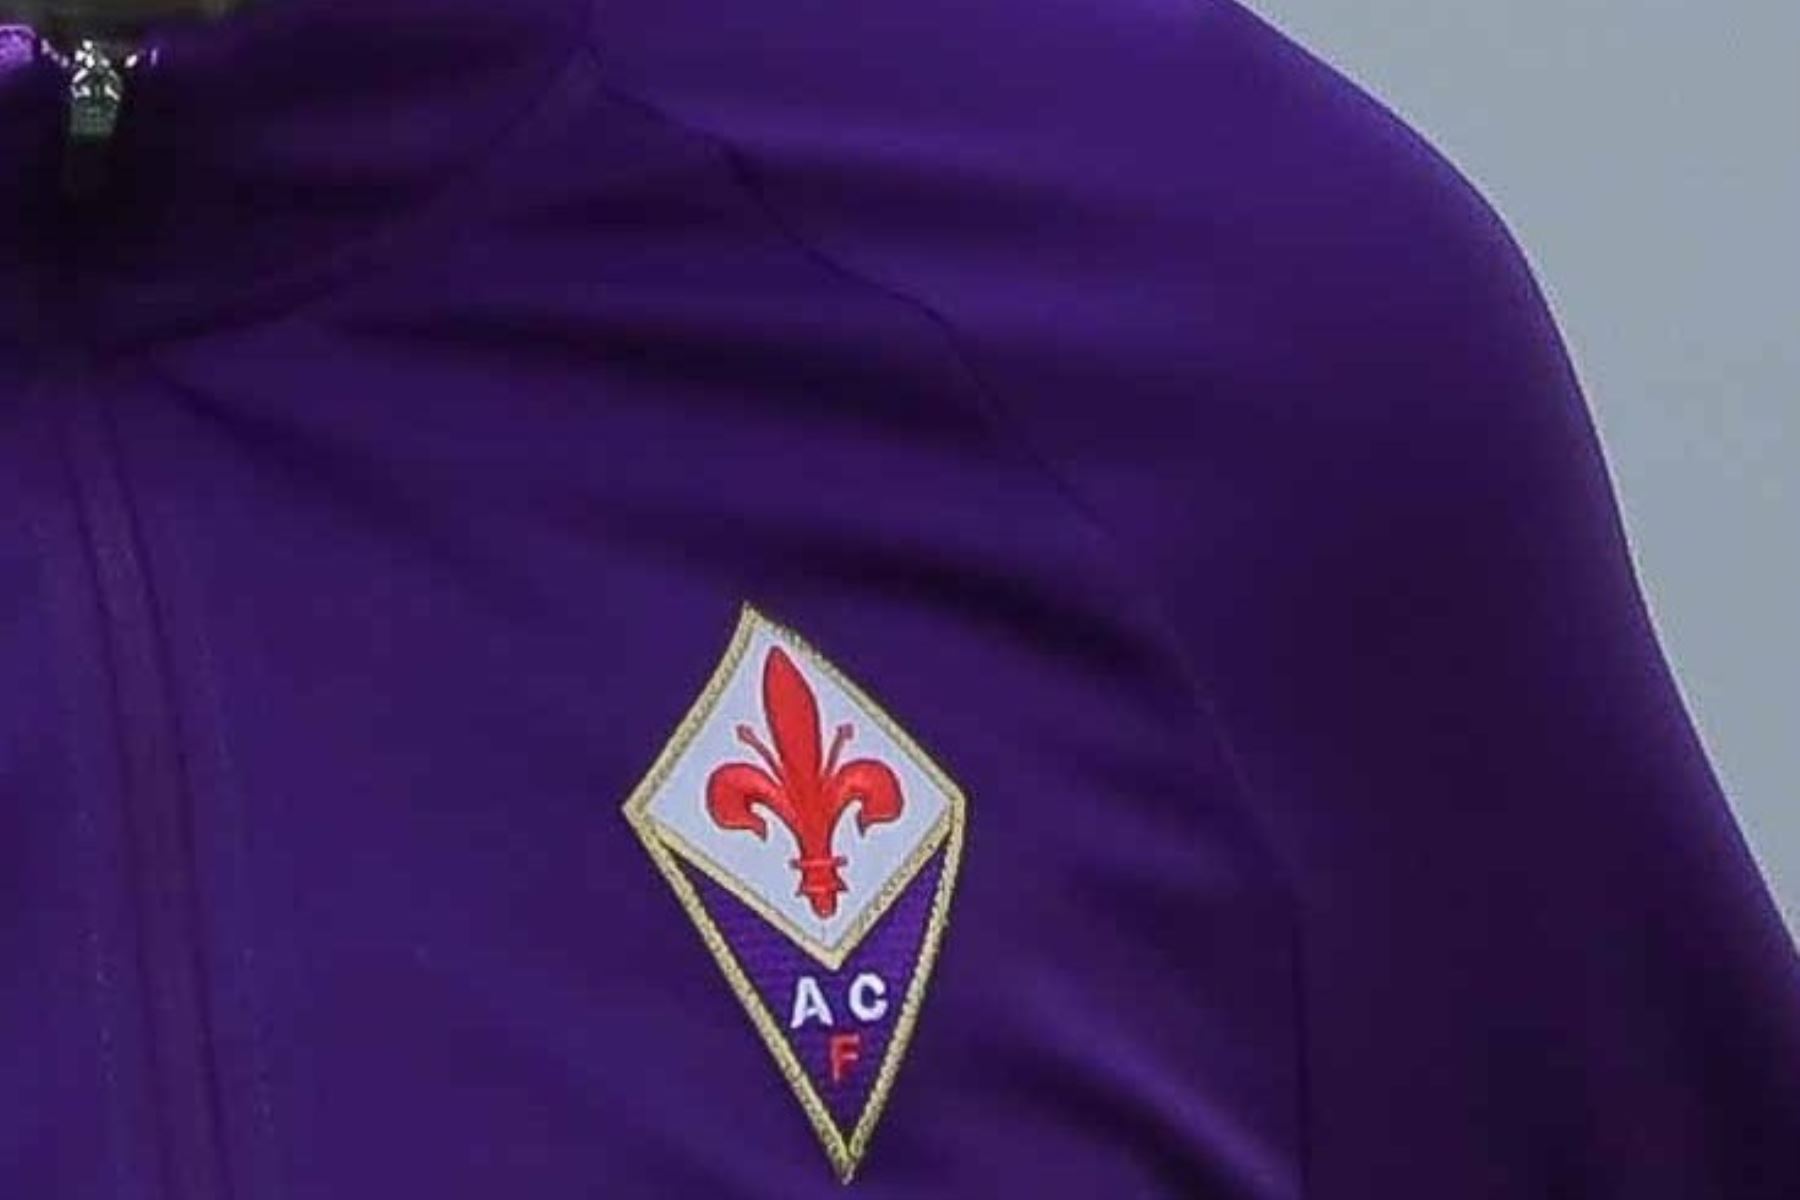 Tres jugadores del Fiorentina y tres miembros del cuerpo técnico y sanitario dieron positivo por coronavirus tras los exámenes realizados previos a la reanudación de los entrenamientos.